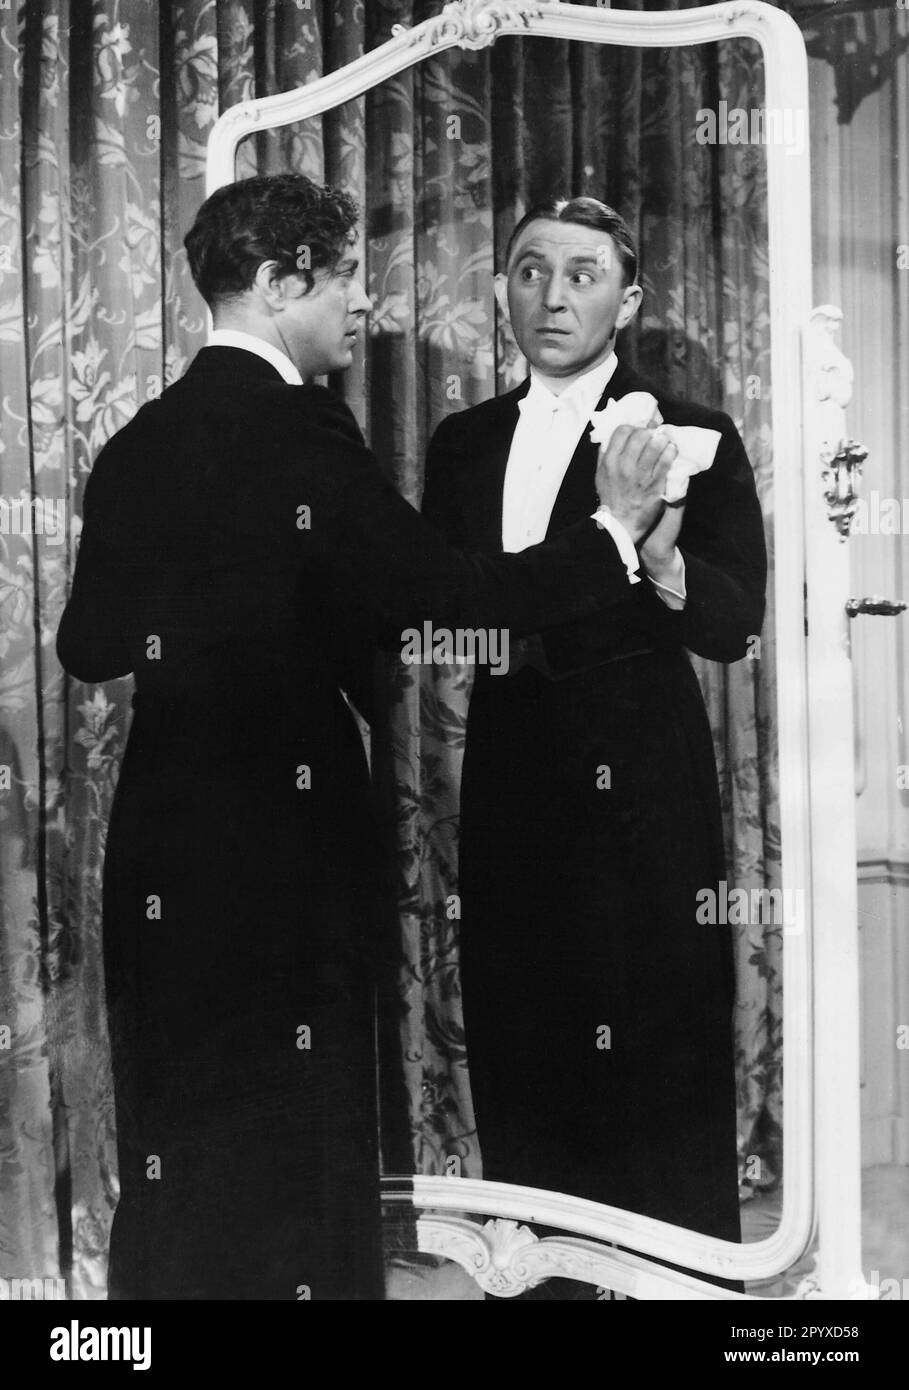 Theo Lingen (à droite) comme maître d'hôtel dans le film "les années de malchance" veut empêcher son maître, Wolf Albach-Retty (à gauche), de remarquer qu'un autre miroir a été brisé. [traduction automatique] Banque D'Images